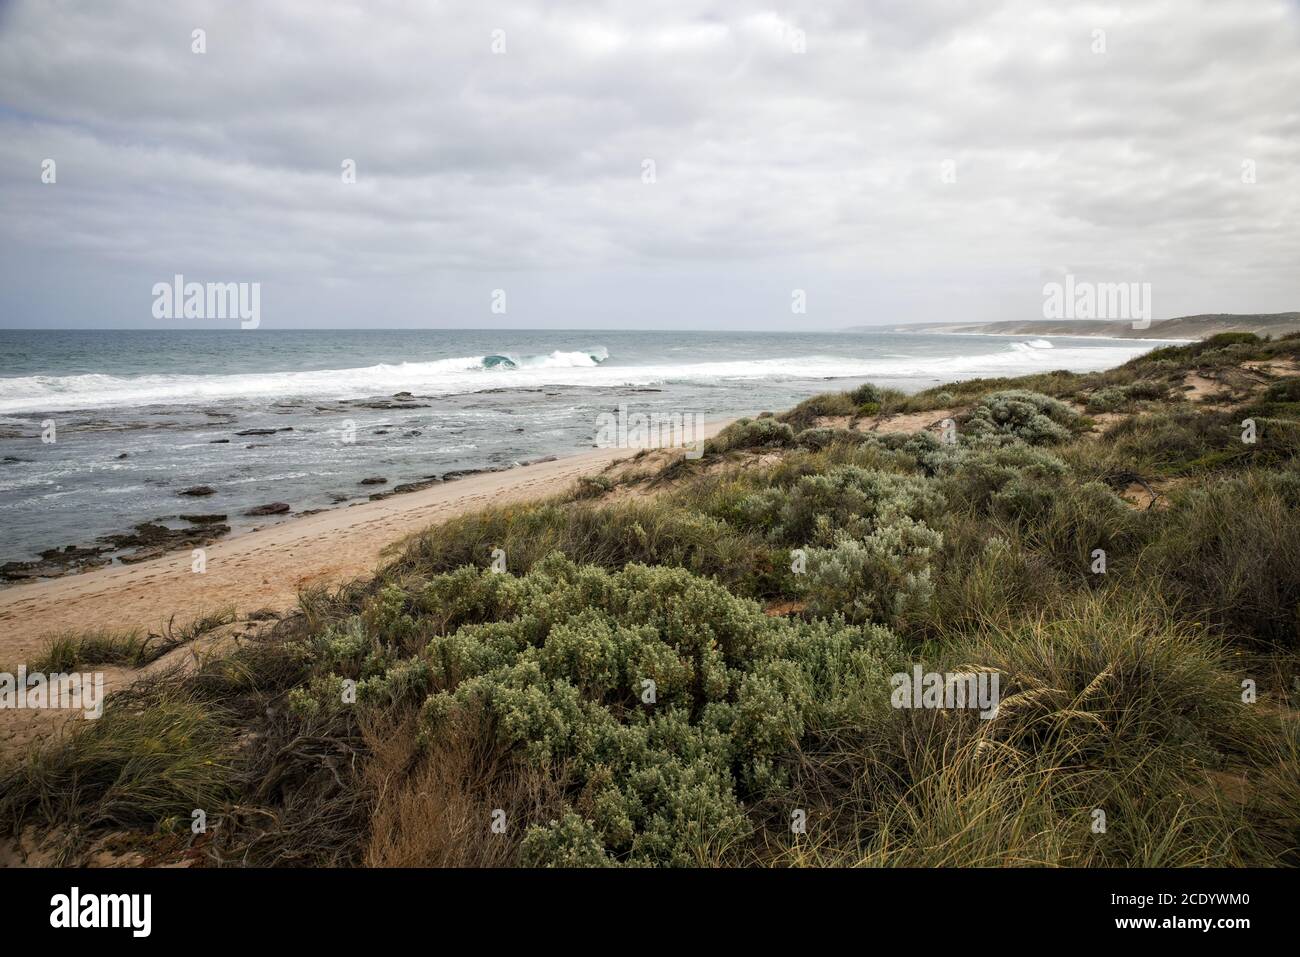 Australie occidentale – côte rugueuse avec ciel gris Banque D'Images